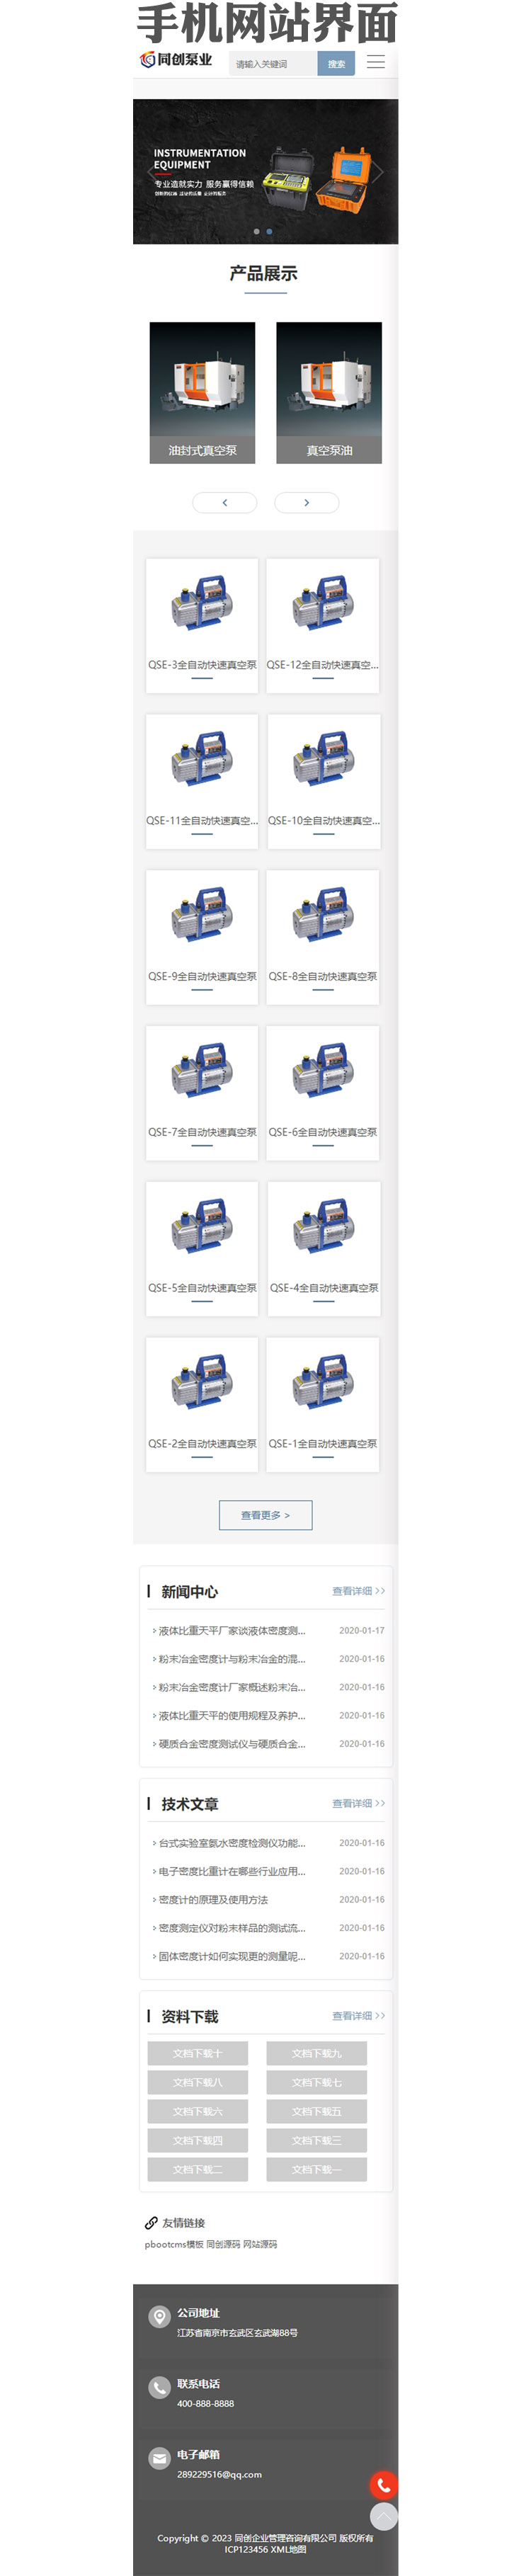 php泵业五金公司网站源码模板-XX127-3